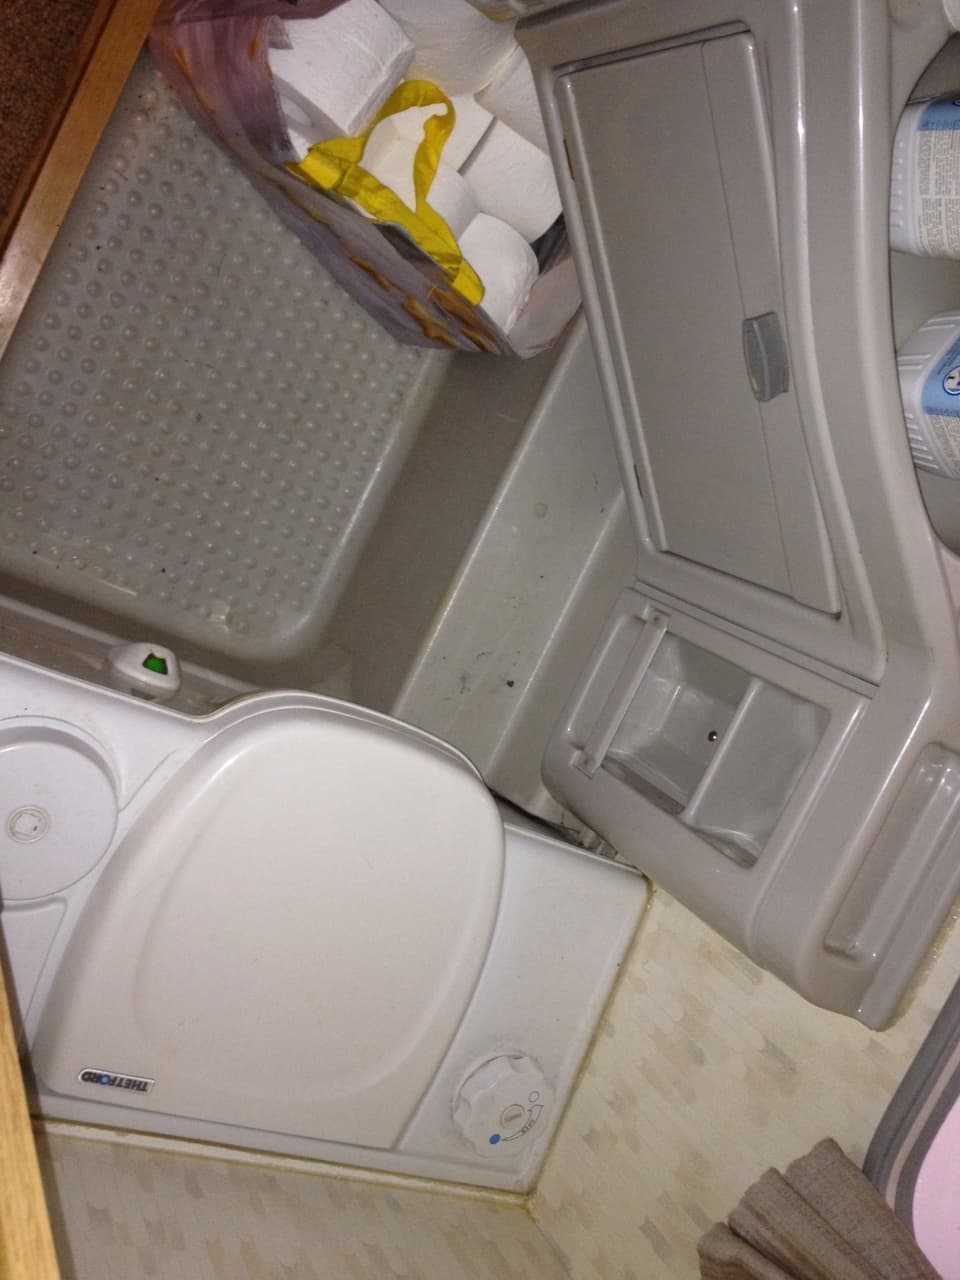 Typisch Wohnwagen WC - klein, eng, zweckmässig